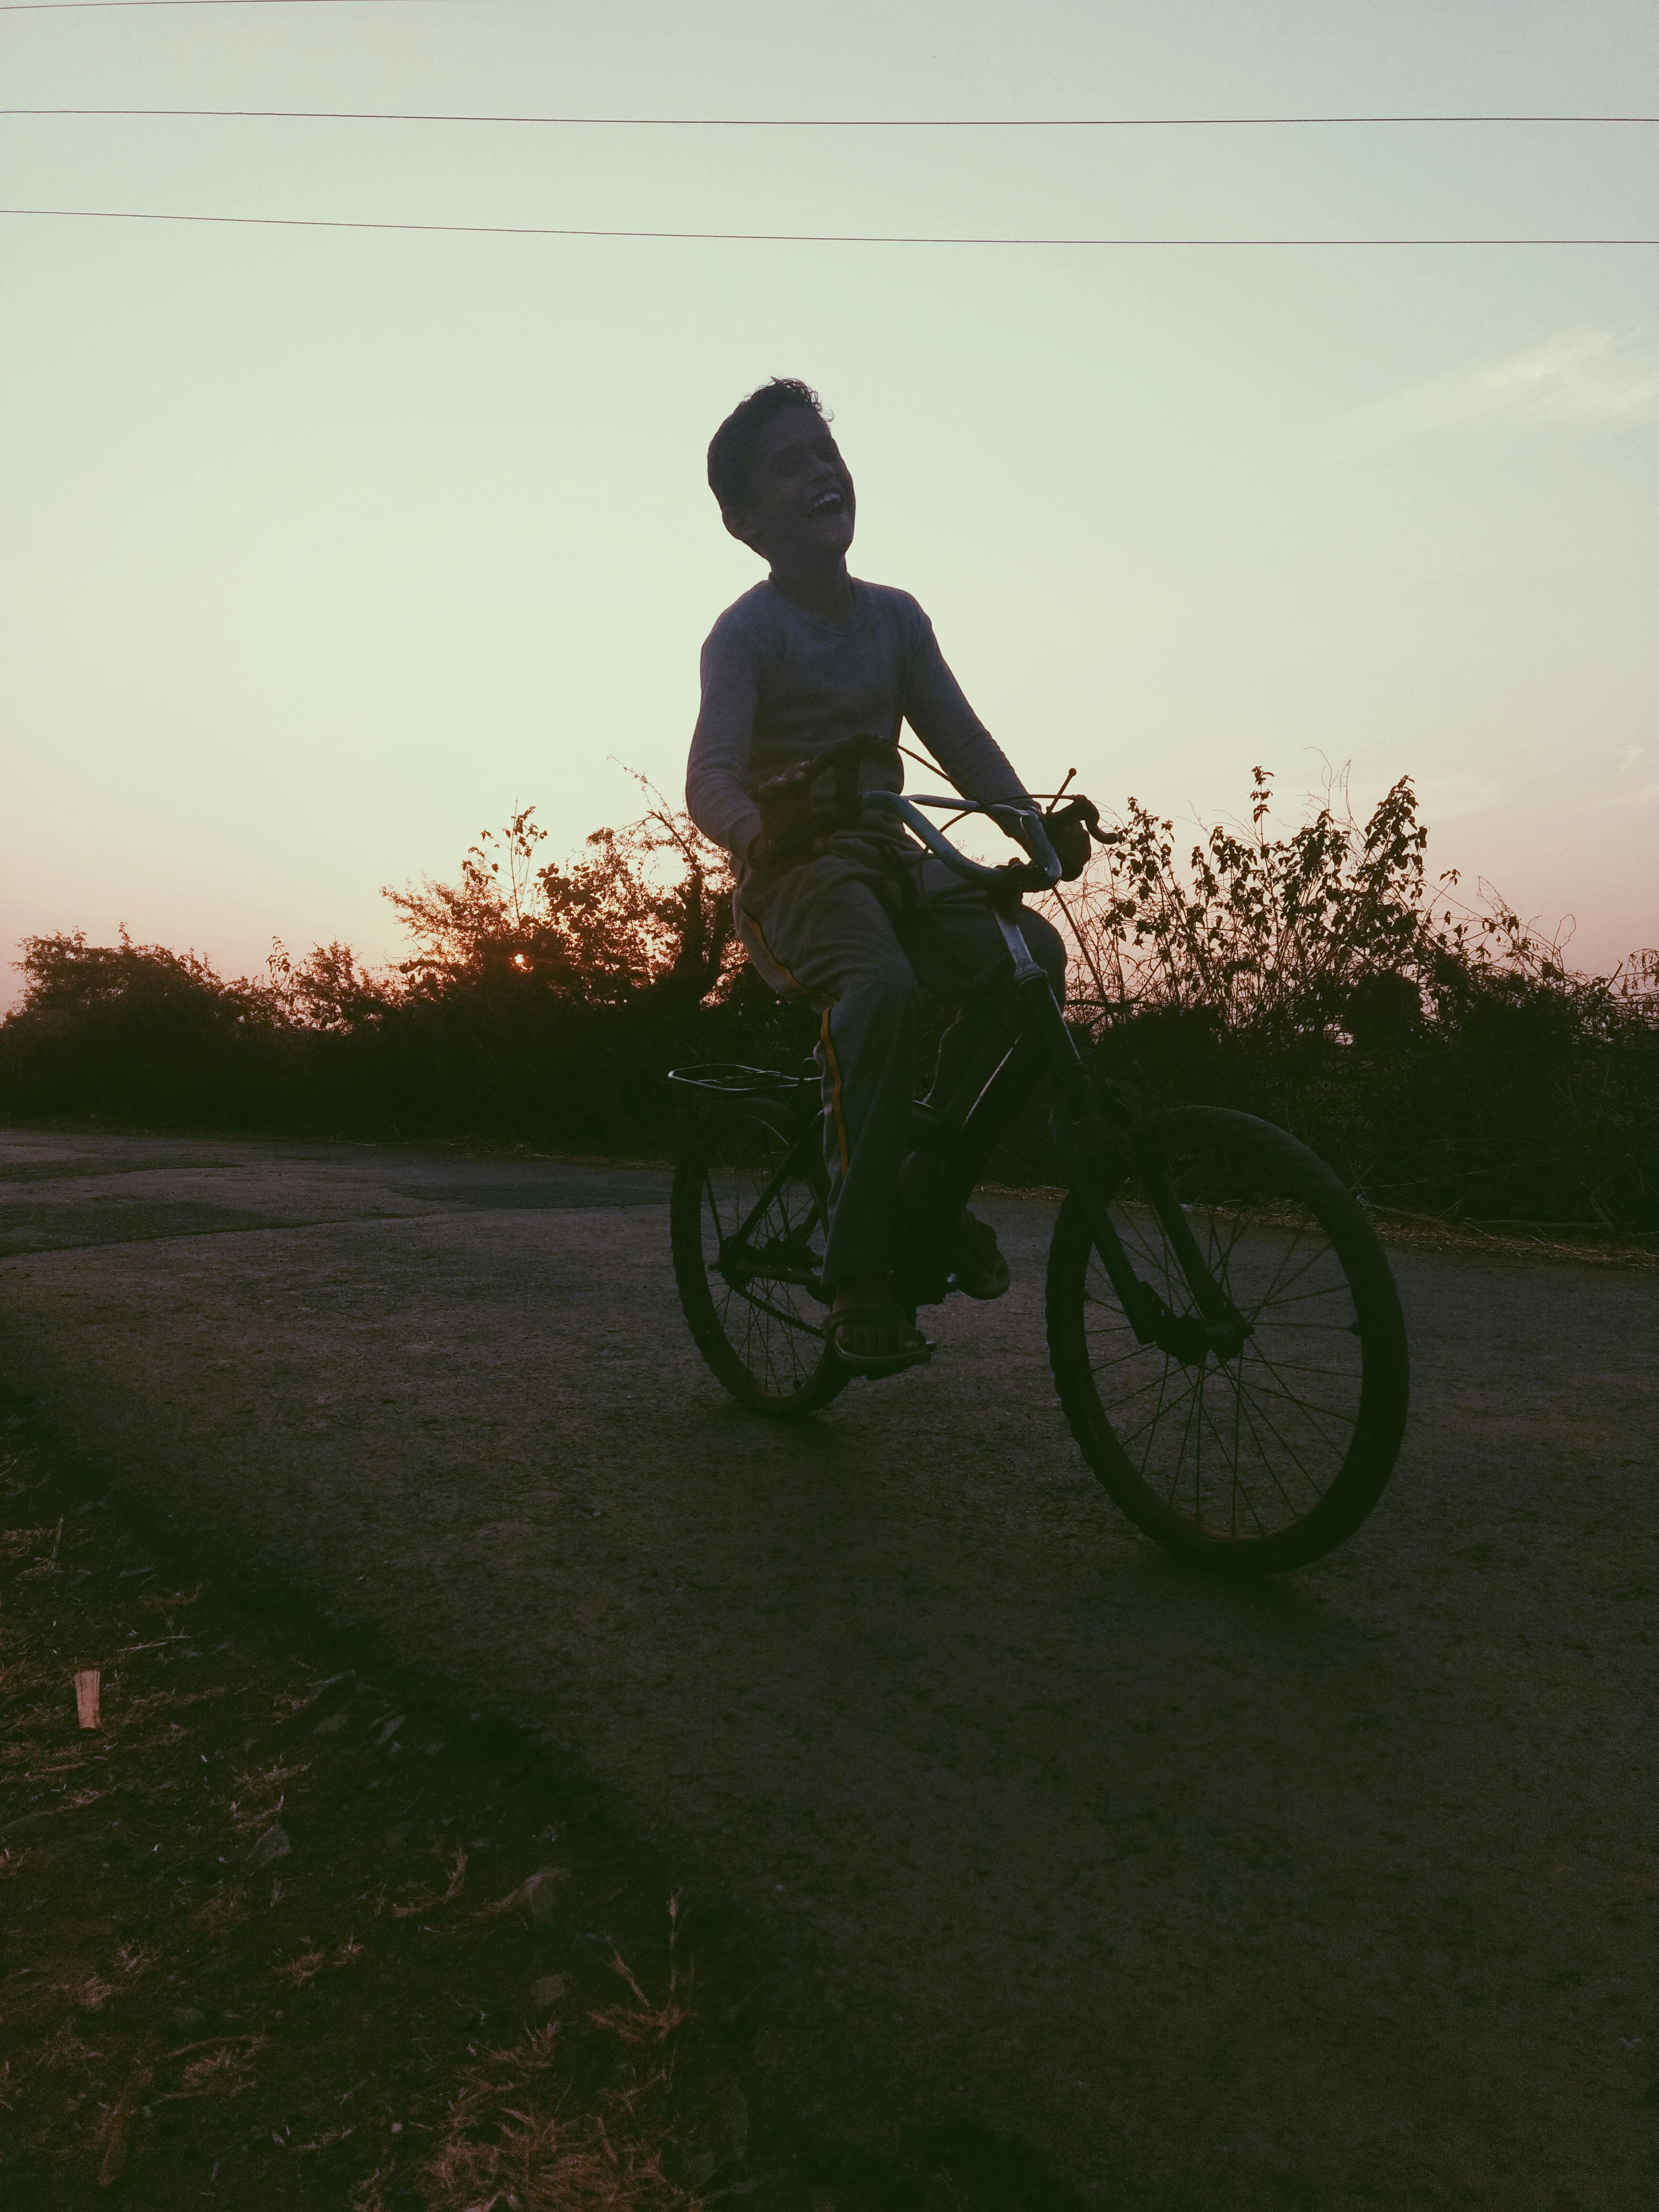 Ein Junge fährt Fahrrad. | Quelle: Pexels